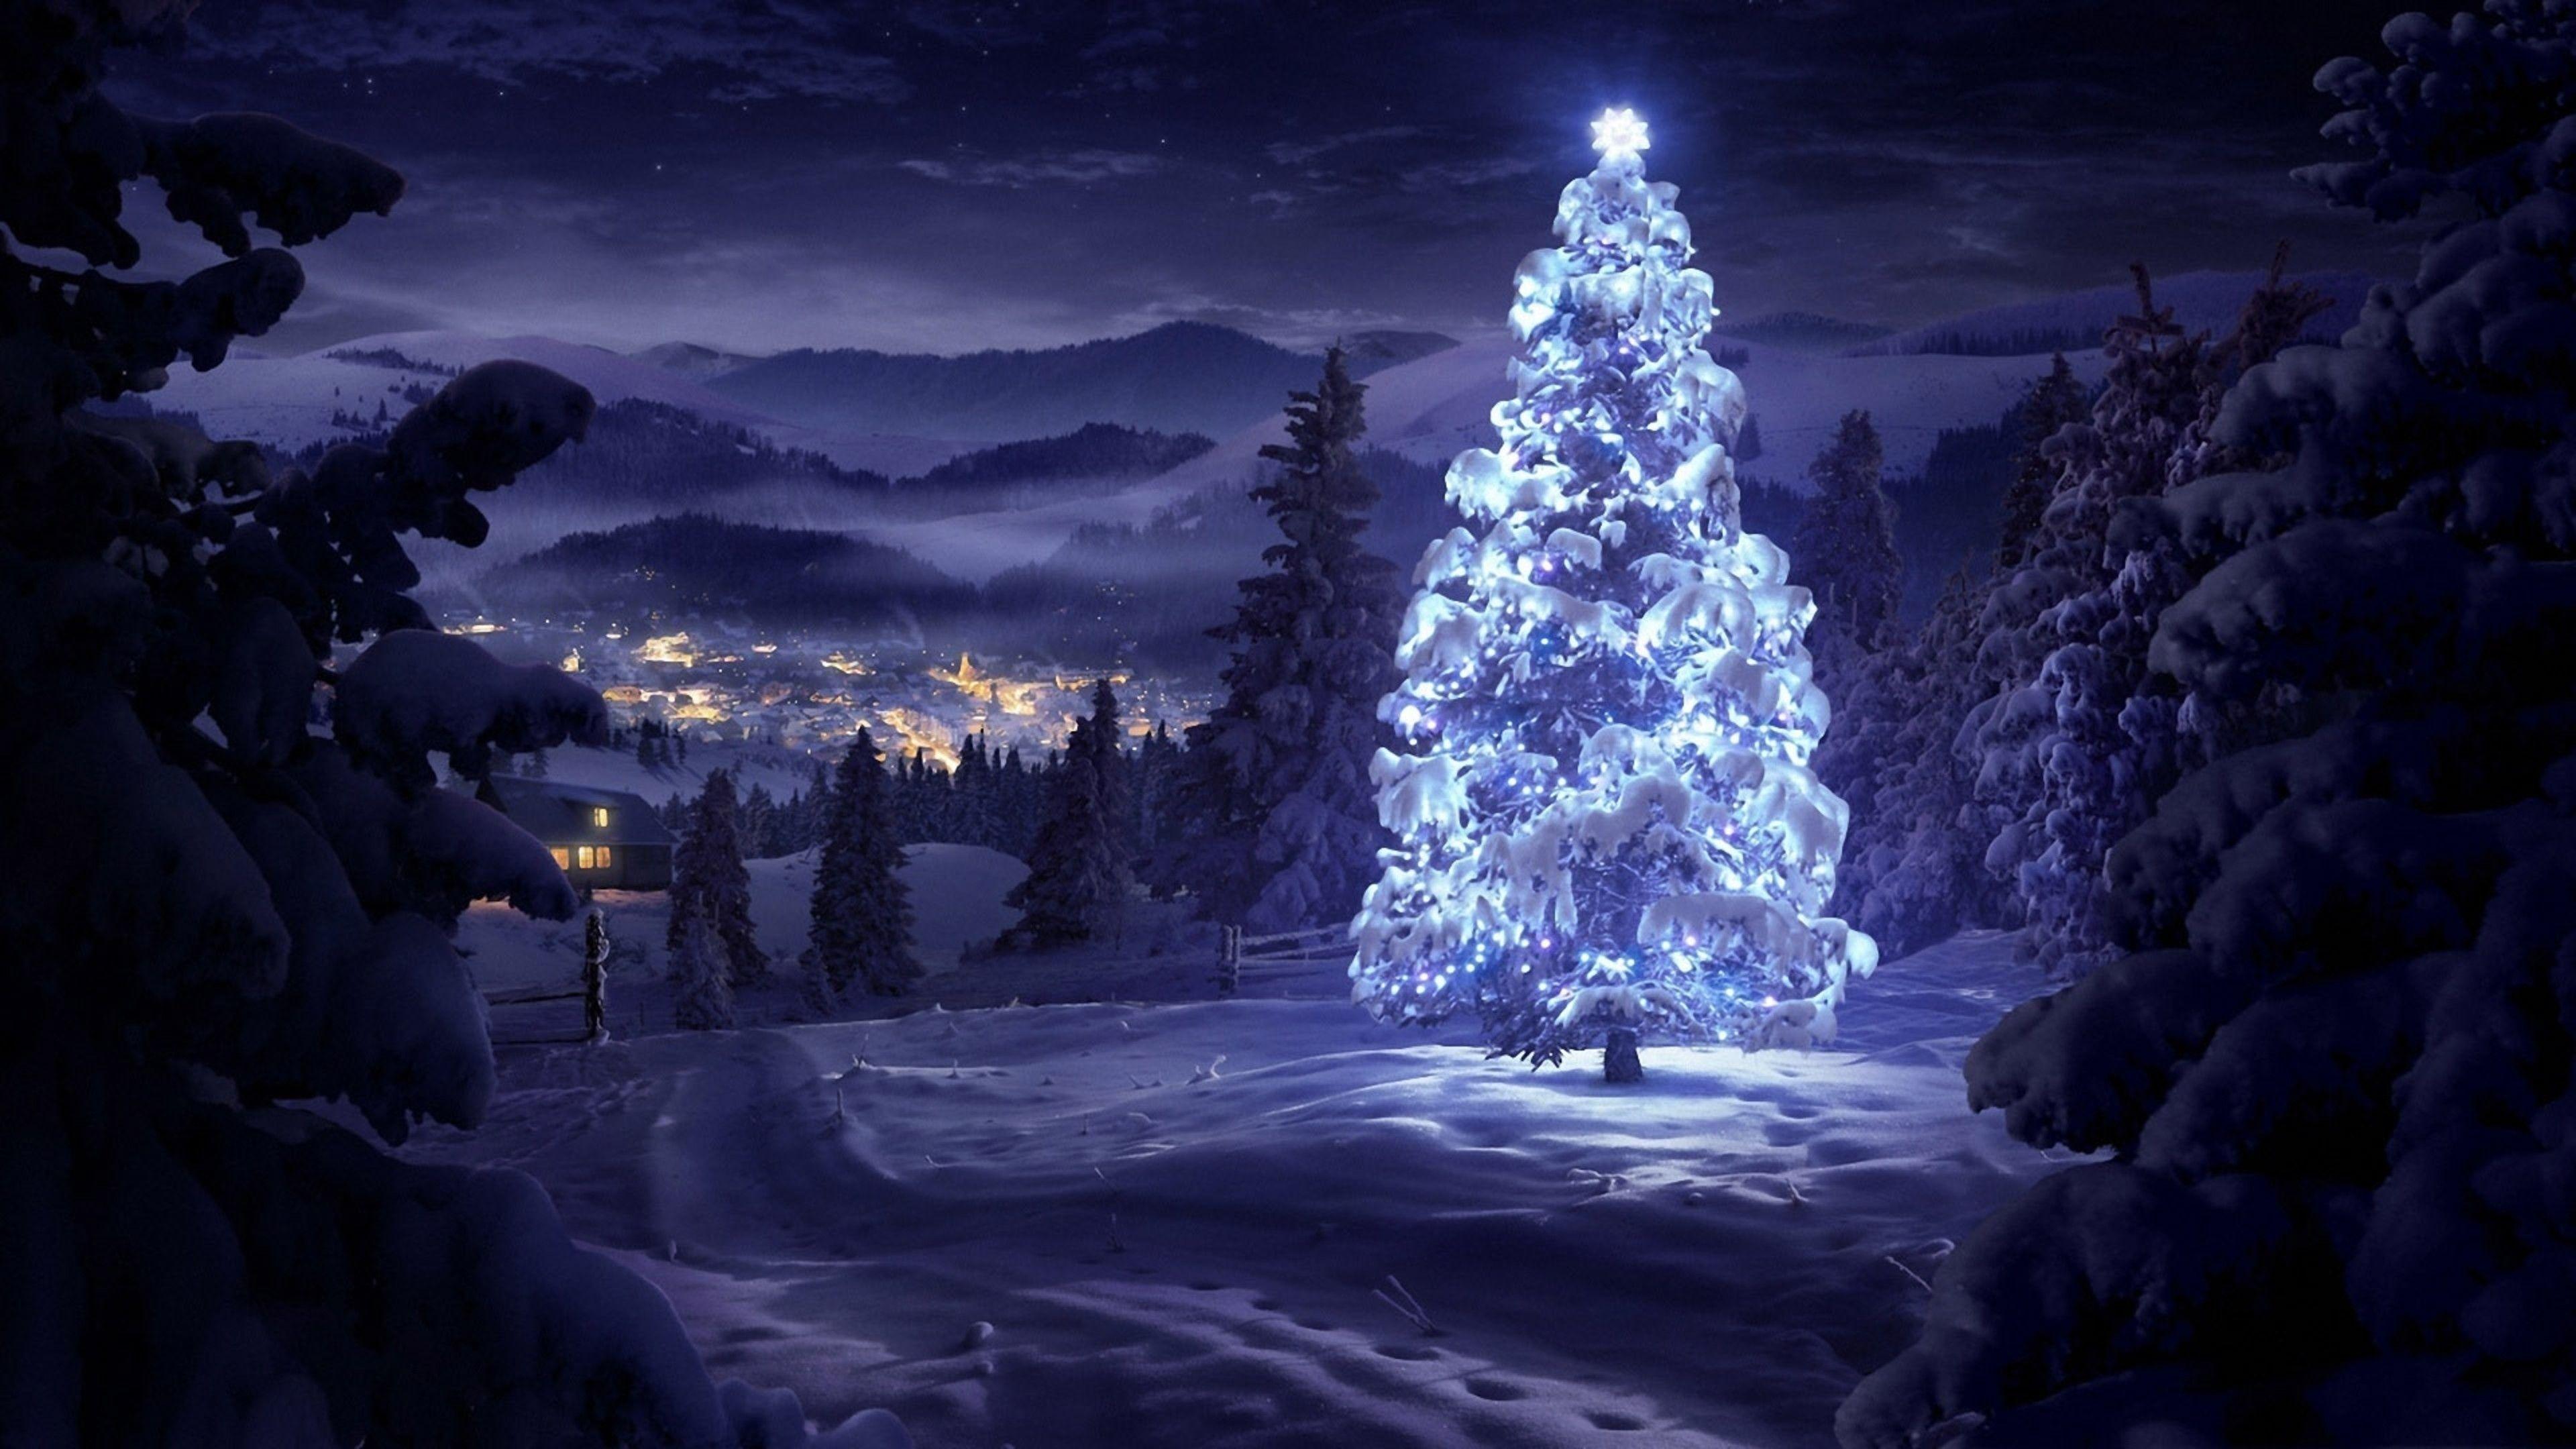 Rung rinh gió đông, mây trời trắng muốt và cùng tỏa sáng cùng những ánh đèn Giáng Sinh tuyệt đẹp, những ngọn núi đẹp là một trong những lựa chọn nên có để bạn chuẩn bị cho mùa Giáng Sinh năm nay. Hãy để bức ảnh nền tảng máy tính dường như đưa bạn đến ngay nơi đó với không gian yên bình, tuyệt đẹp ngay tại gia đình của bạn qua màn hình máy tính.